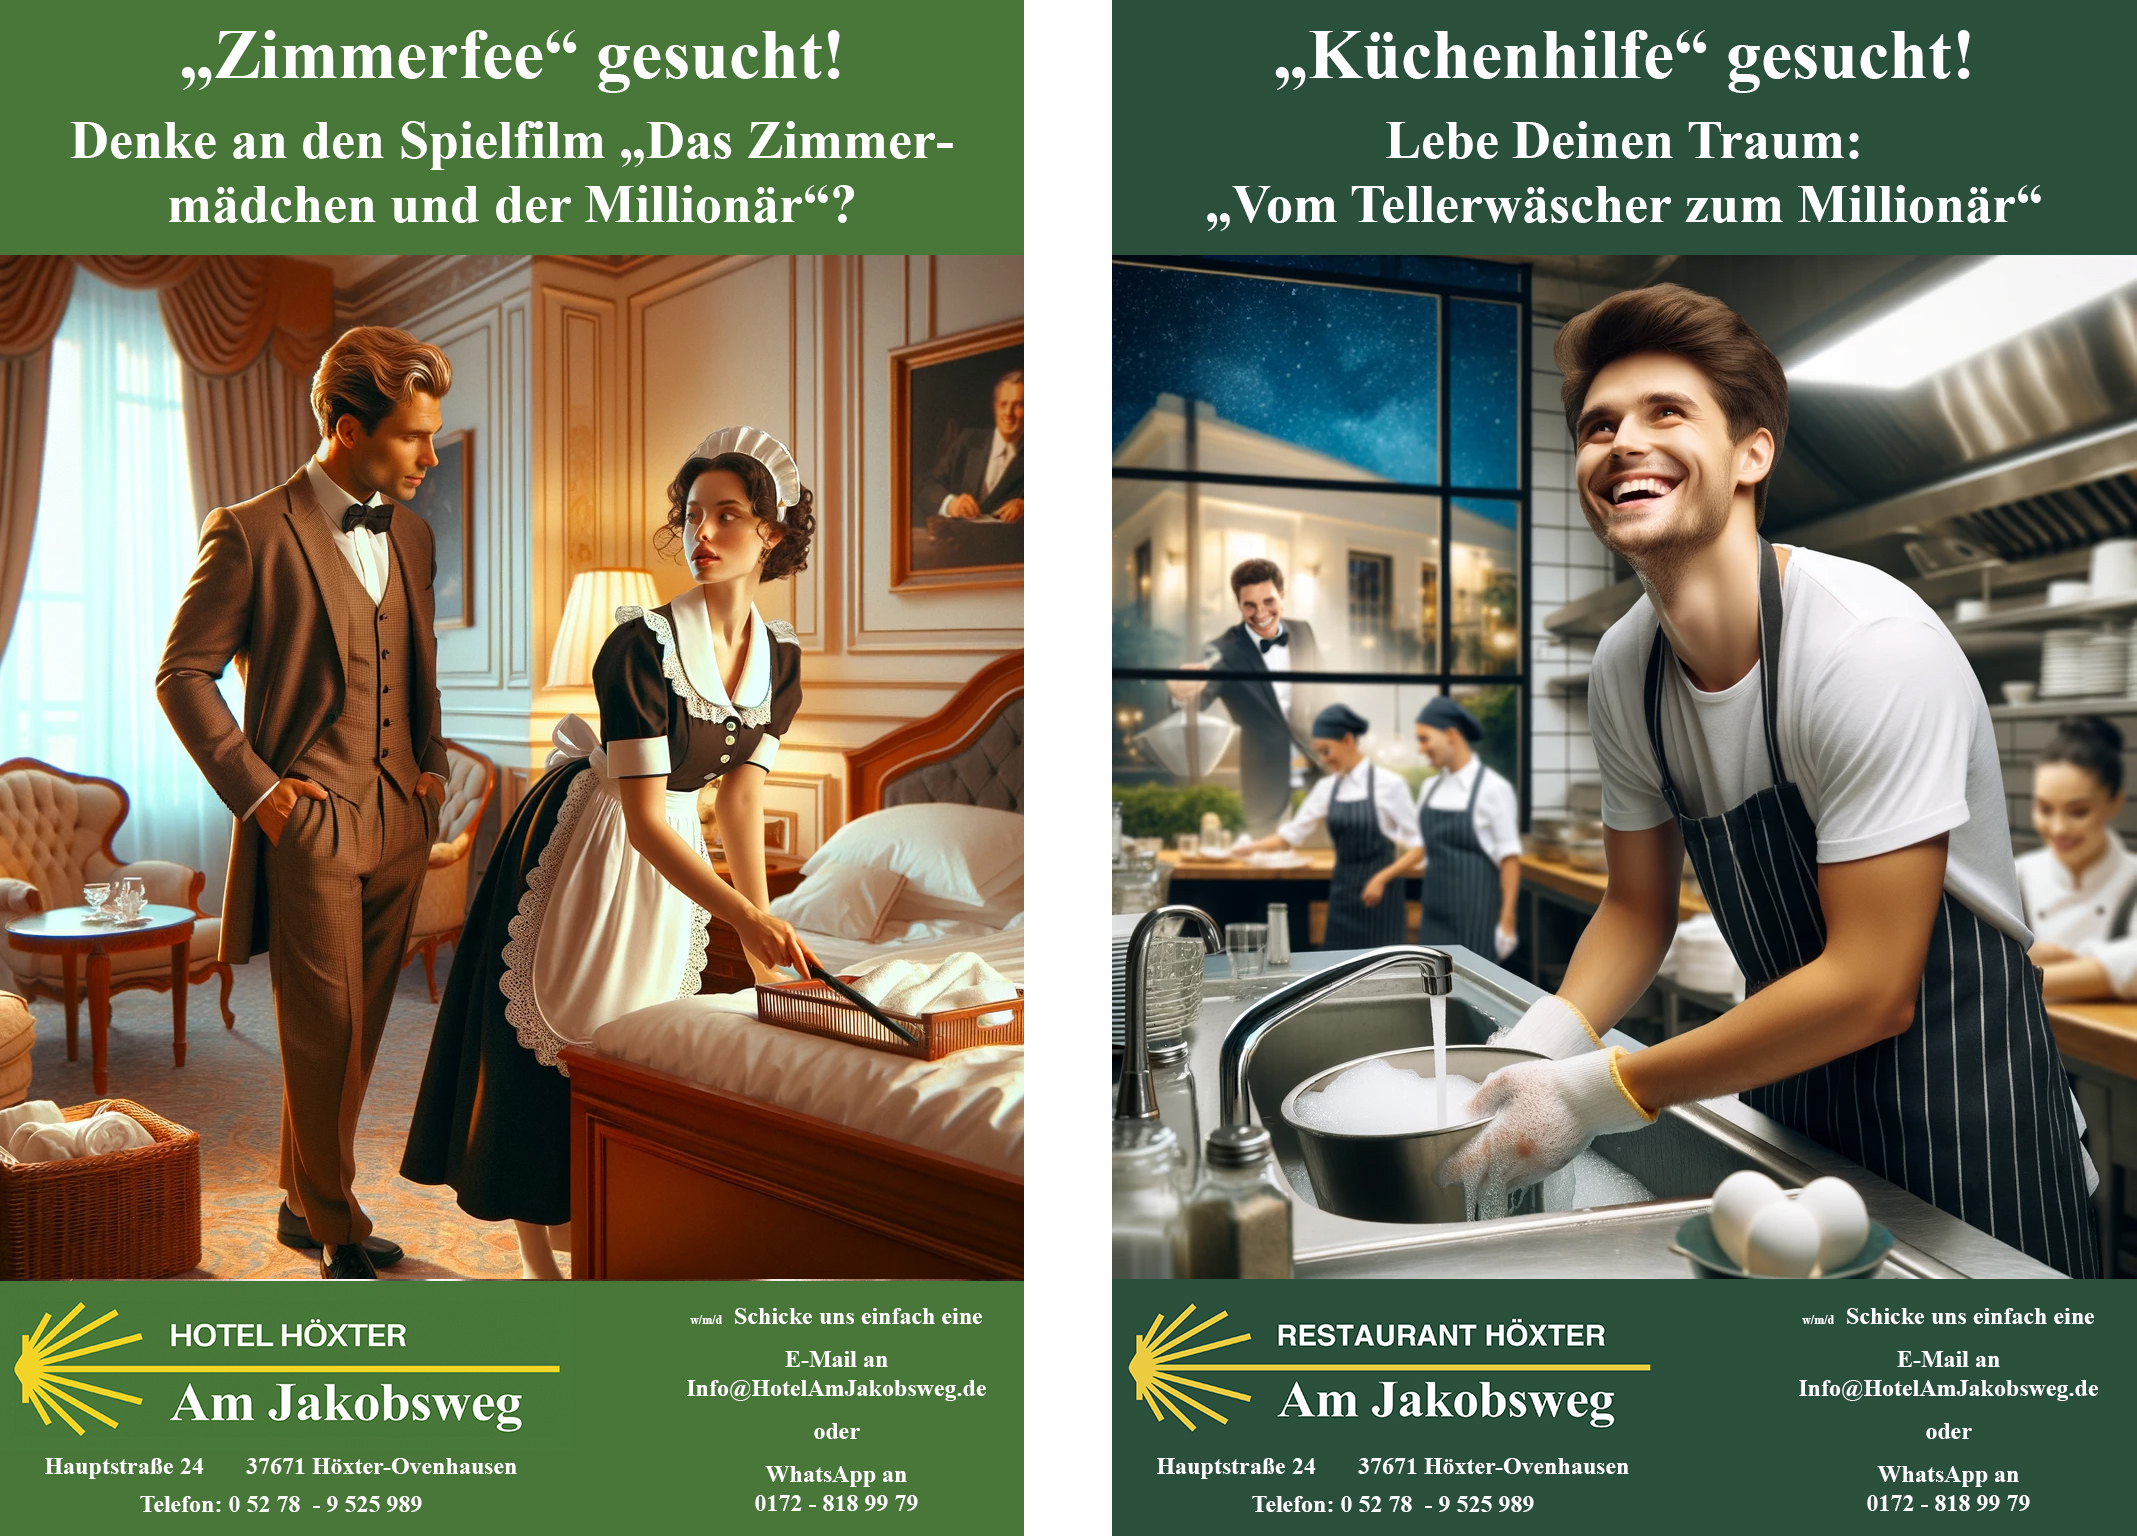 Hotel Hoexter Am Jakobsweg Jobs: Zimmerfee und Küchenhilfe